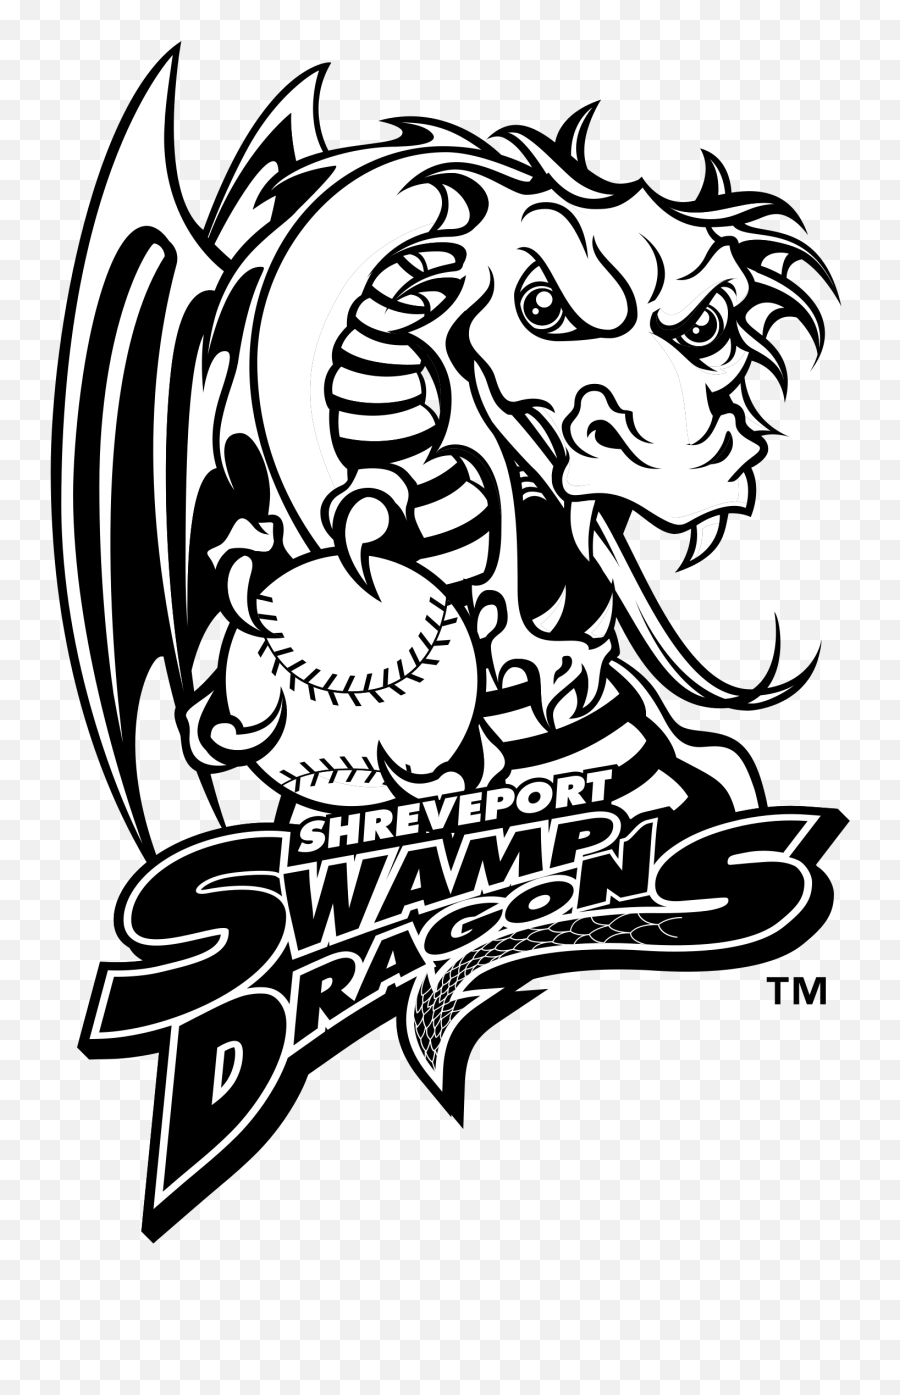 Shreveport Swamp Dragons Logo Png Transparent U0026 Svg Vector - Shreveport Swamp Dragons,Swamp Png